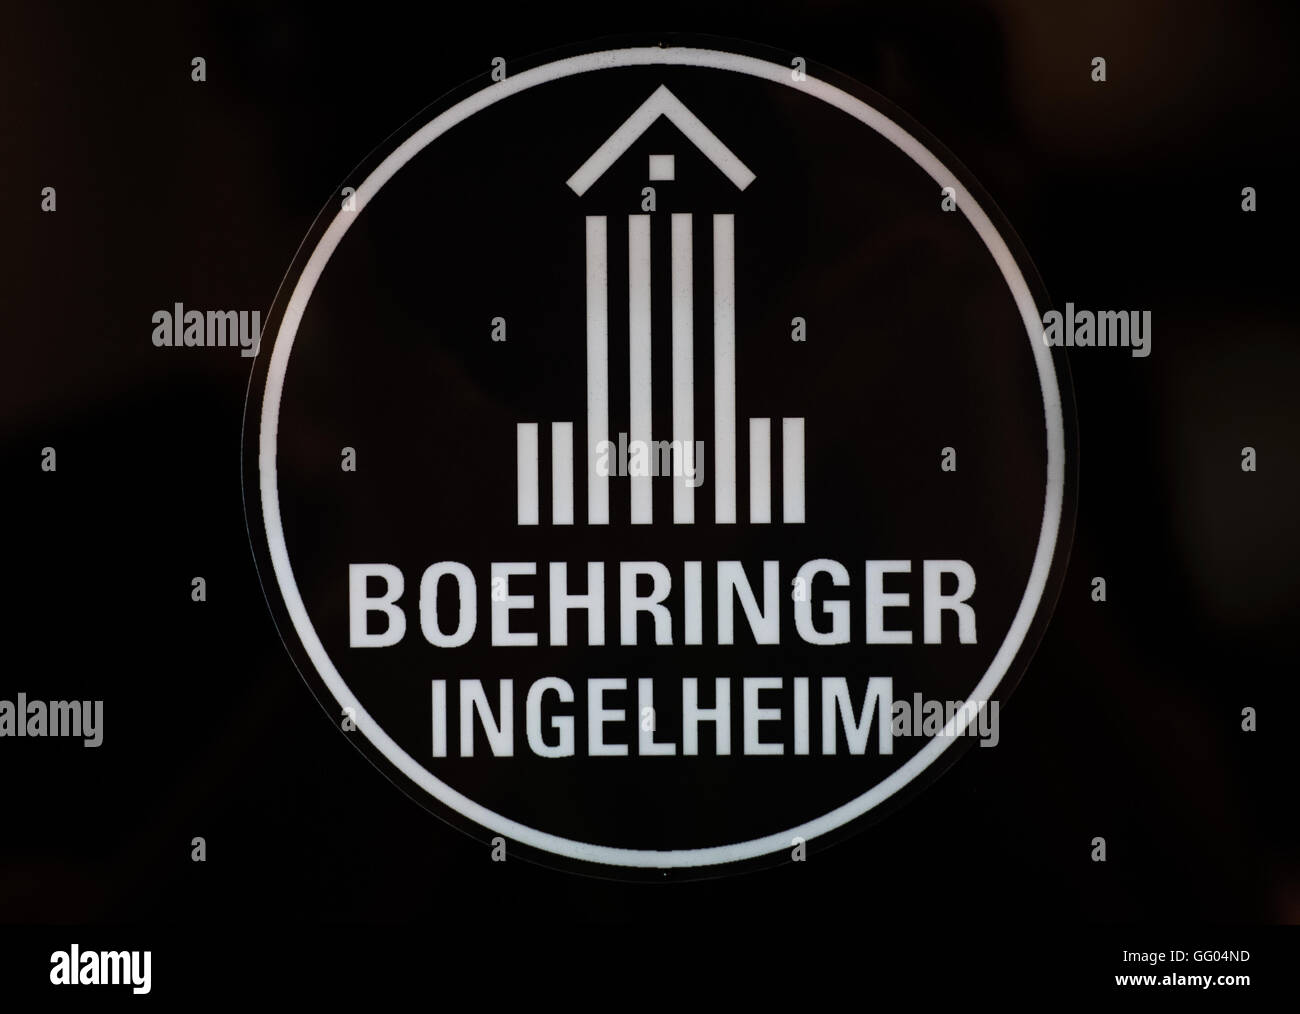 La storica azienda logo della società farmaceutica Boehringer Ingelheim brilla al buio su un pannello di vetro nel museo di piante in Ingelheim am Rhein, Germania, 23 giugno 2016. Foto: Andreas Arnold/dpa Foto Stock